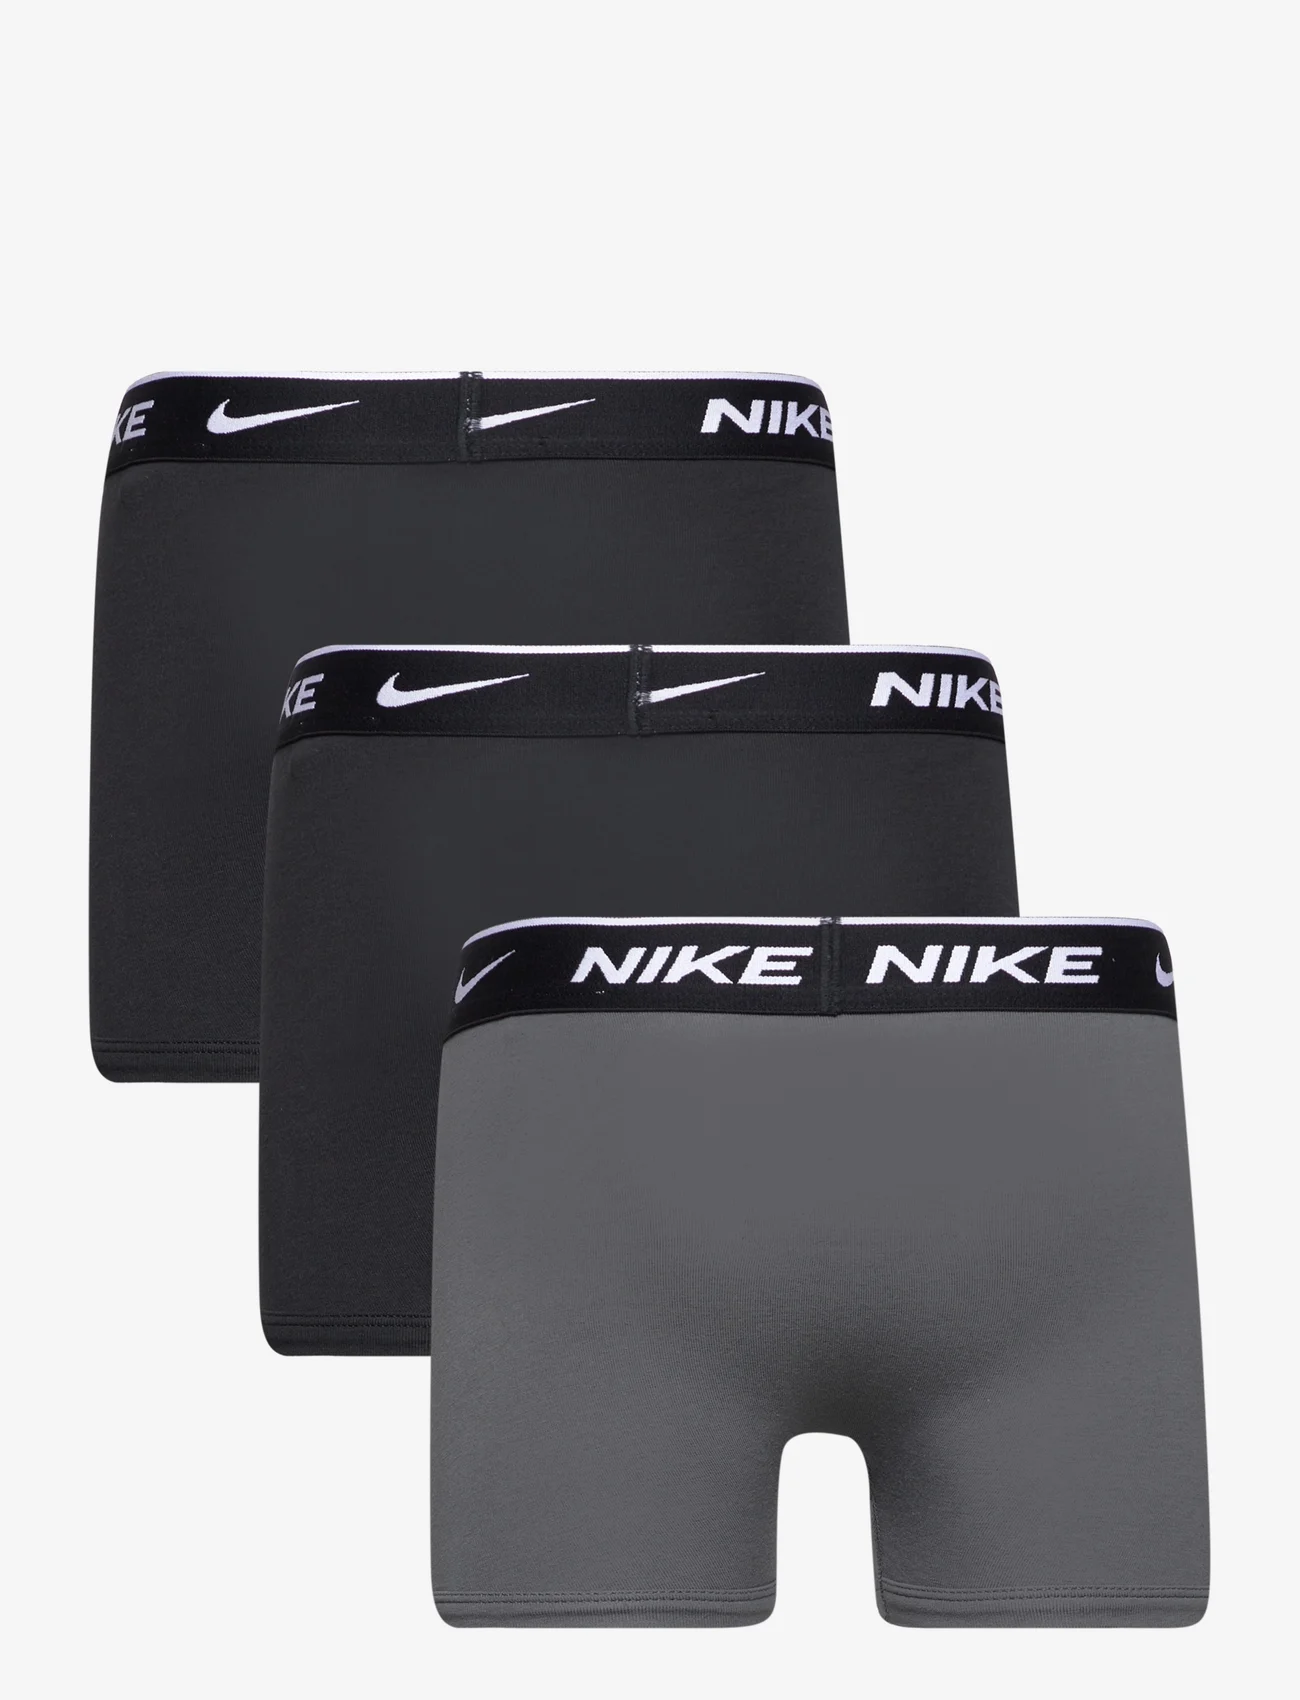 Nike - NHB NHB E DAY COTTON STRETCH 3 / NHB NHB E DAY COTTON STRETC - underbukser - black / dk grey - 1